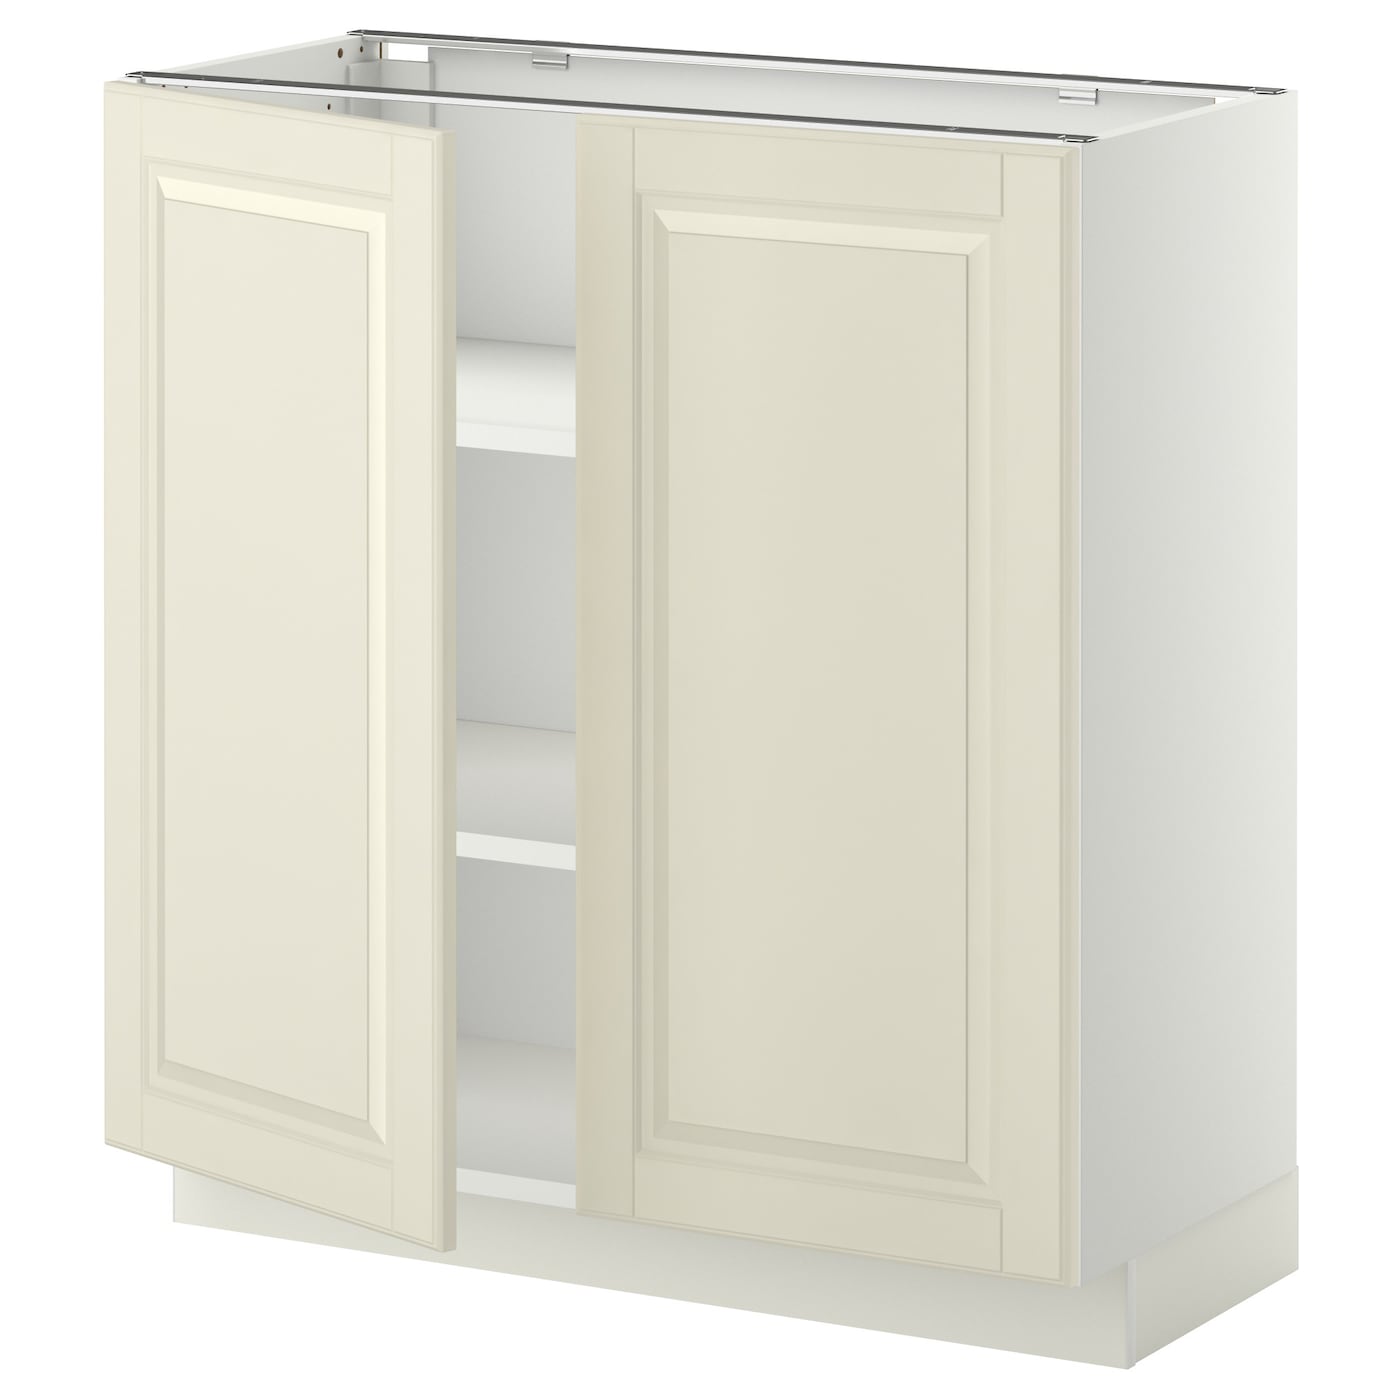 Напольный шкаф - IKEA METOD, 88x39,5x80см, белый/светло-бежевый, МЕТОД ИКЕА